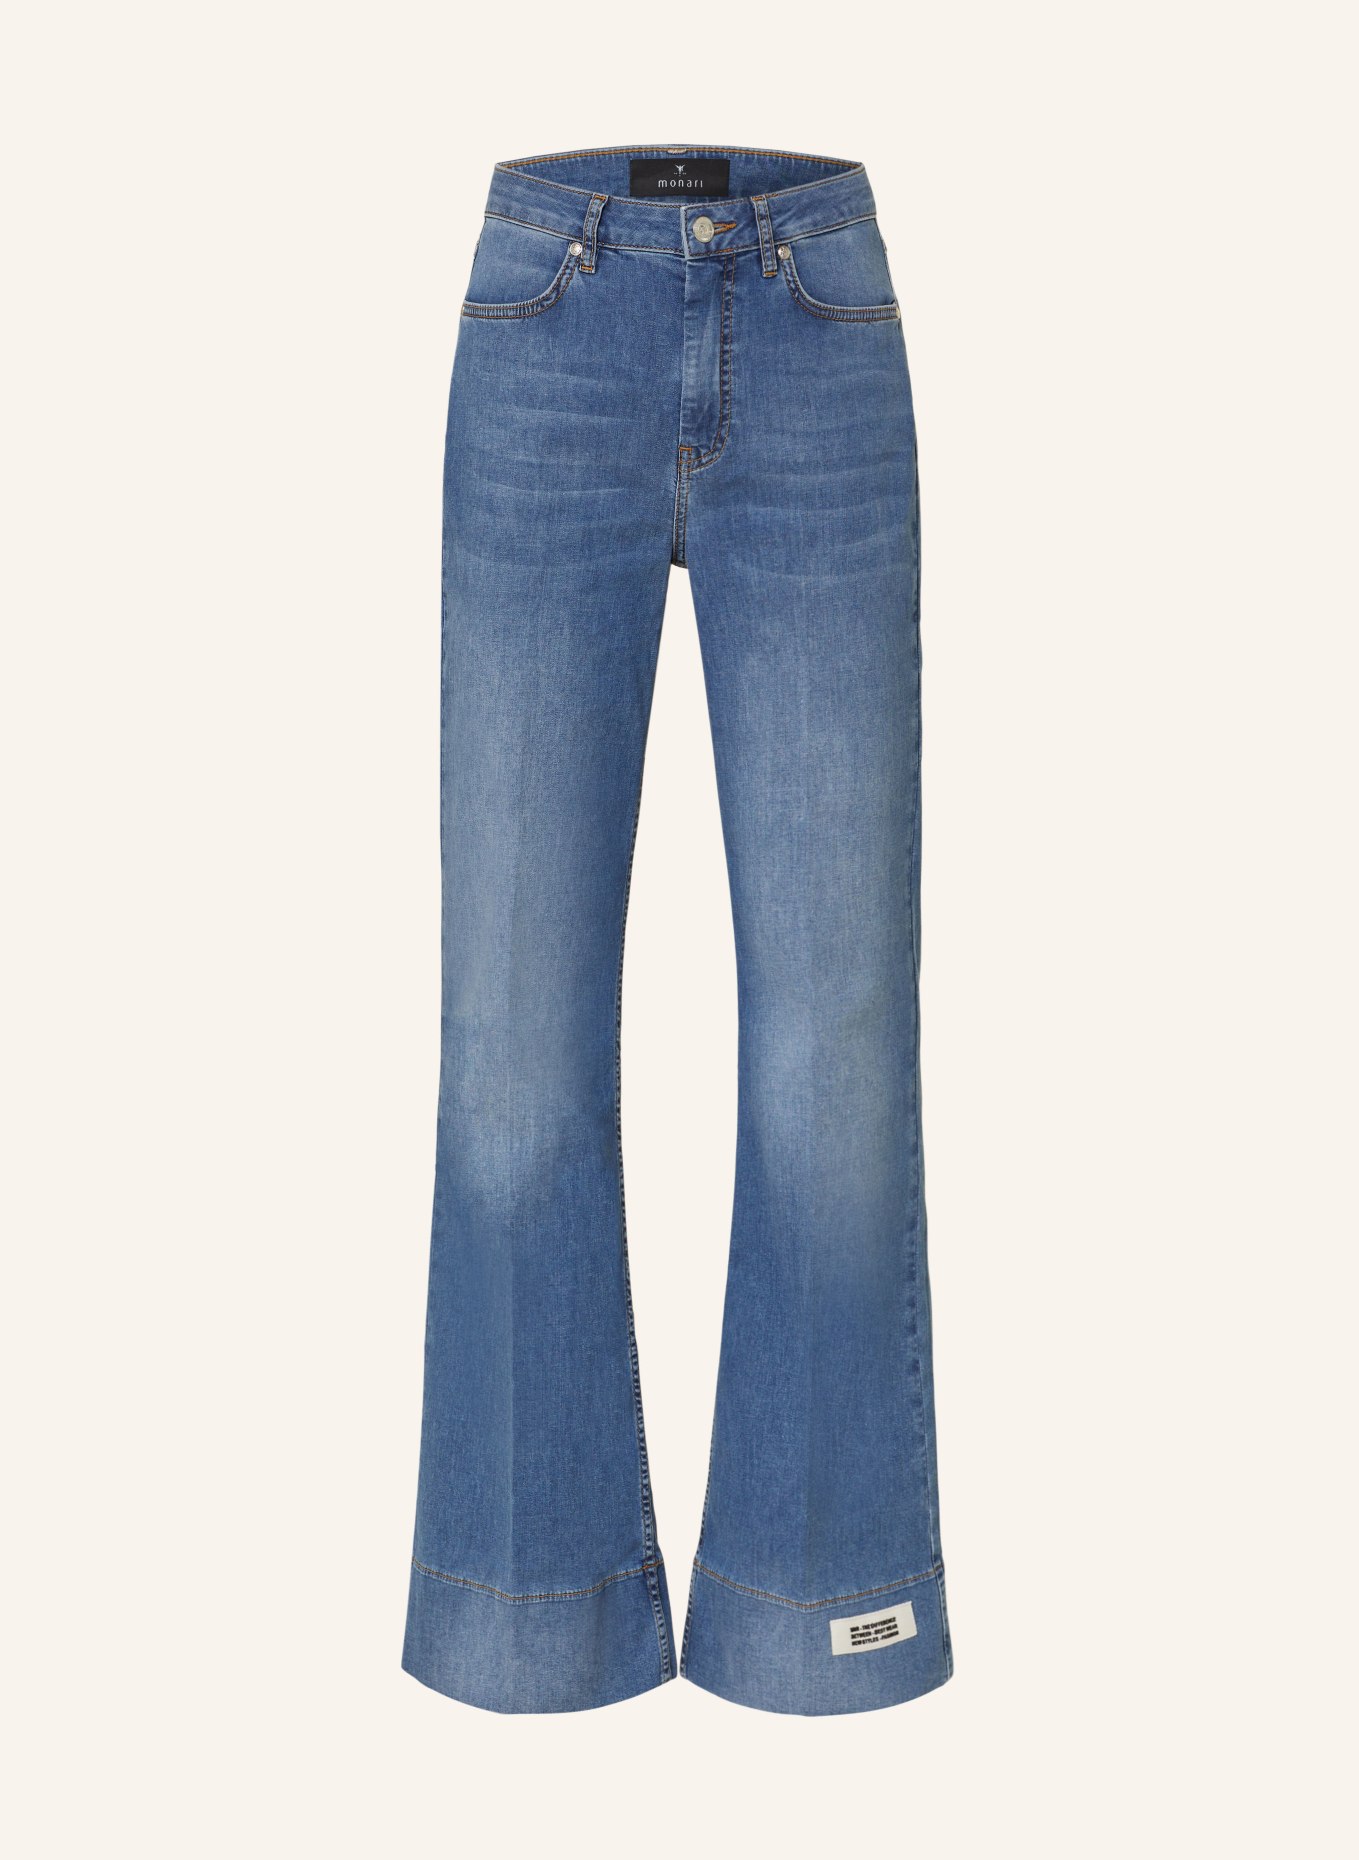 monari Bootcut jeans, Color: 750 jeans (Image 1)